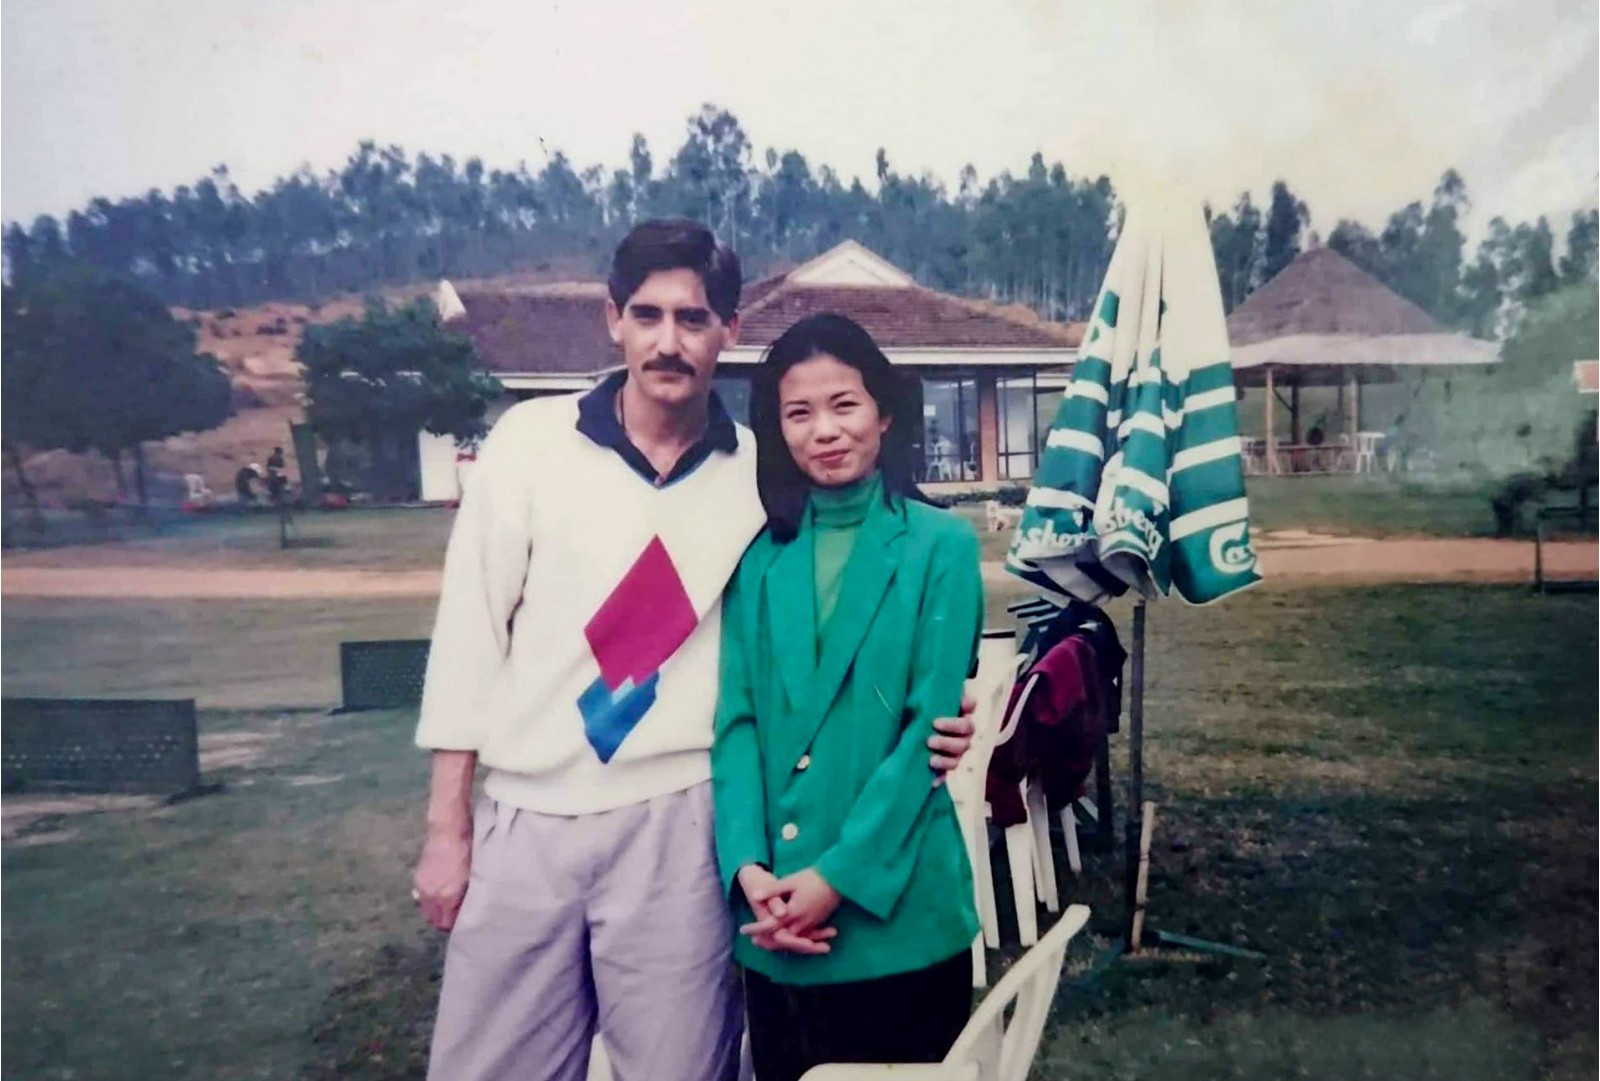 Robert và vợ tại sân golf Đồng Mô năm 1994